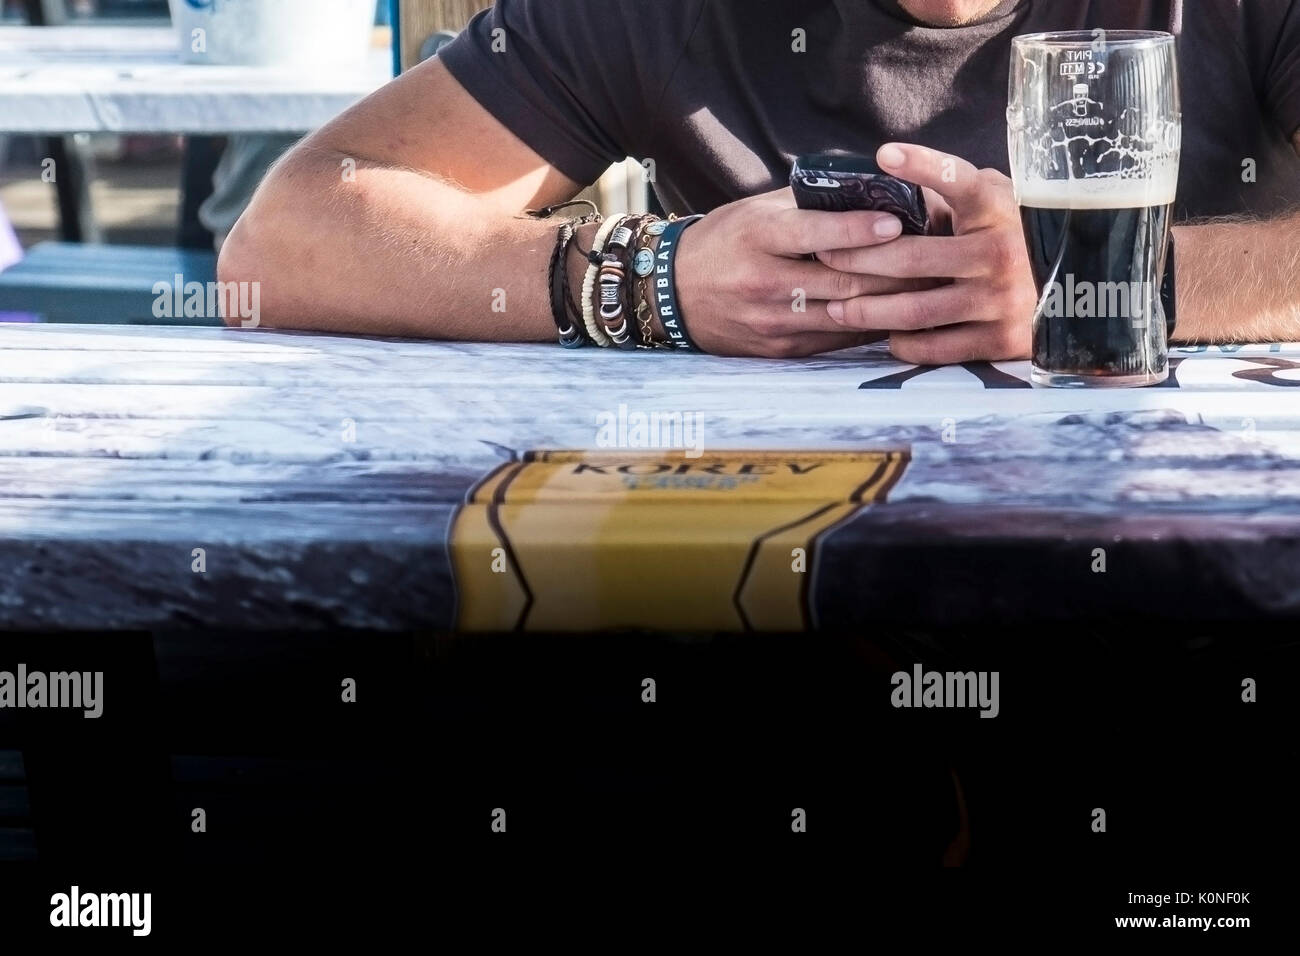 Un homme assis à une table à l'aide de son smartphone et portant divers bracelets sur son bras. Banque D'Images